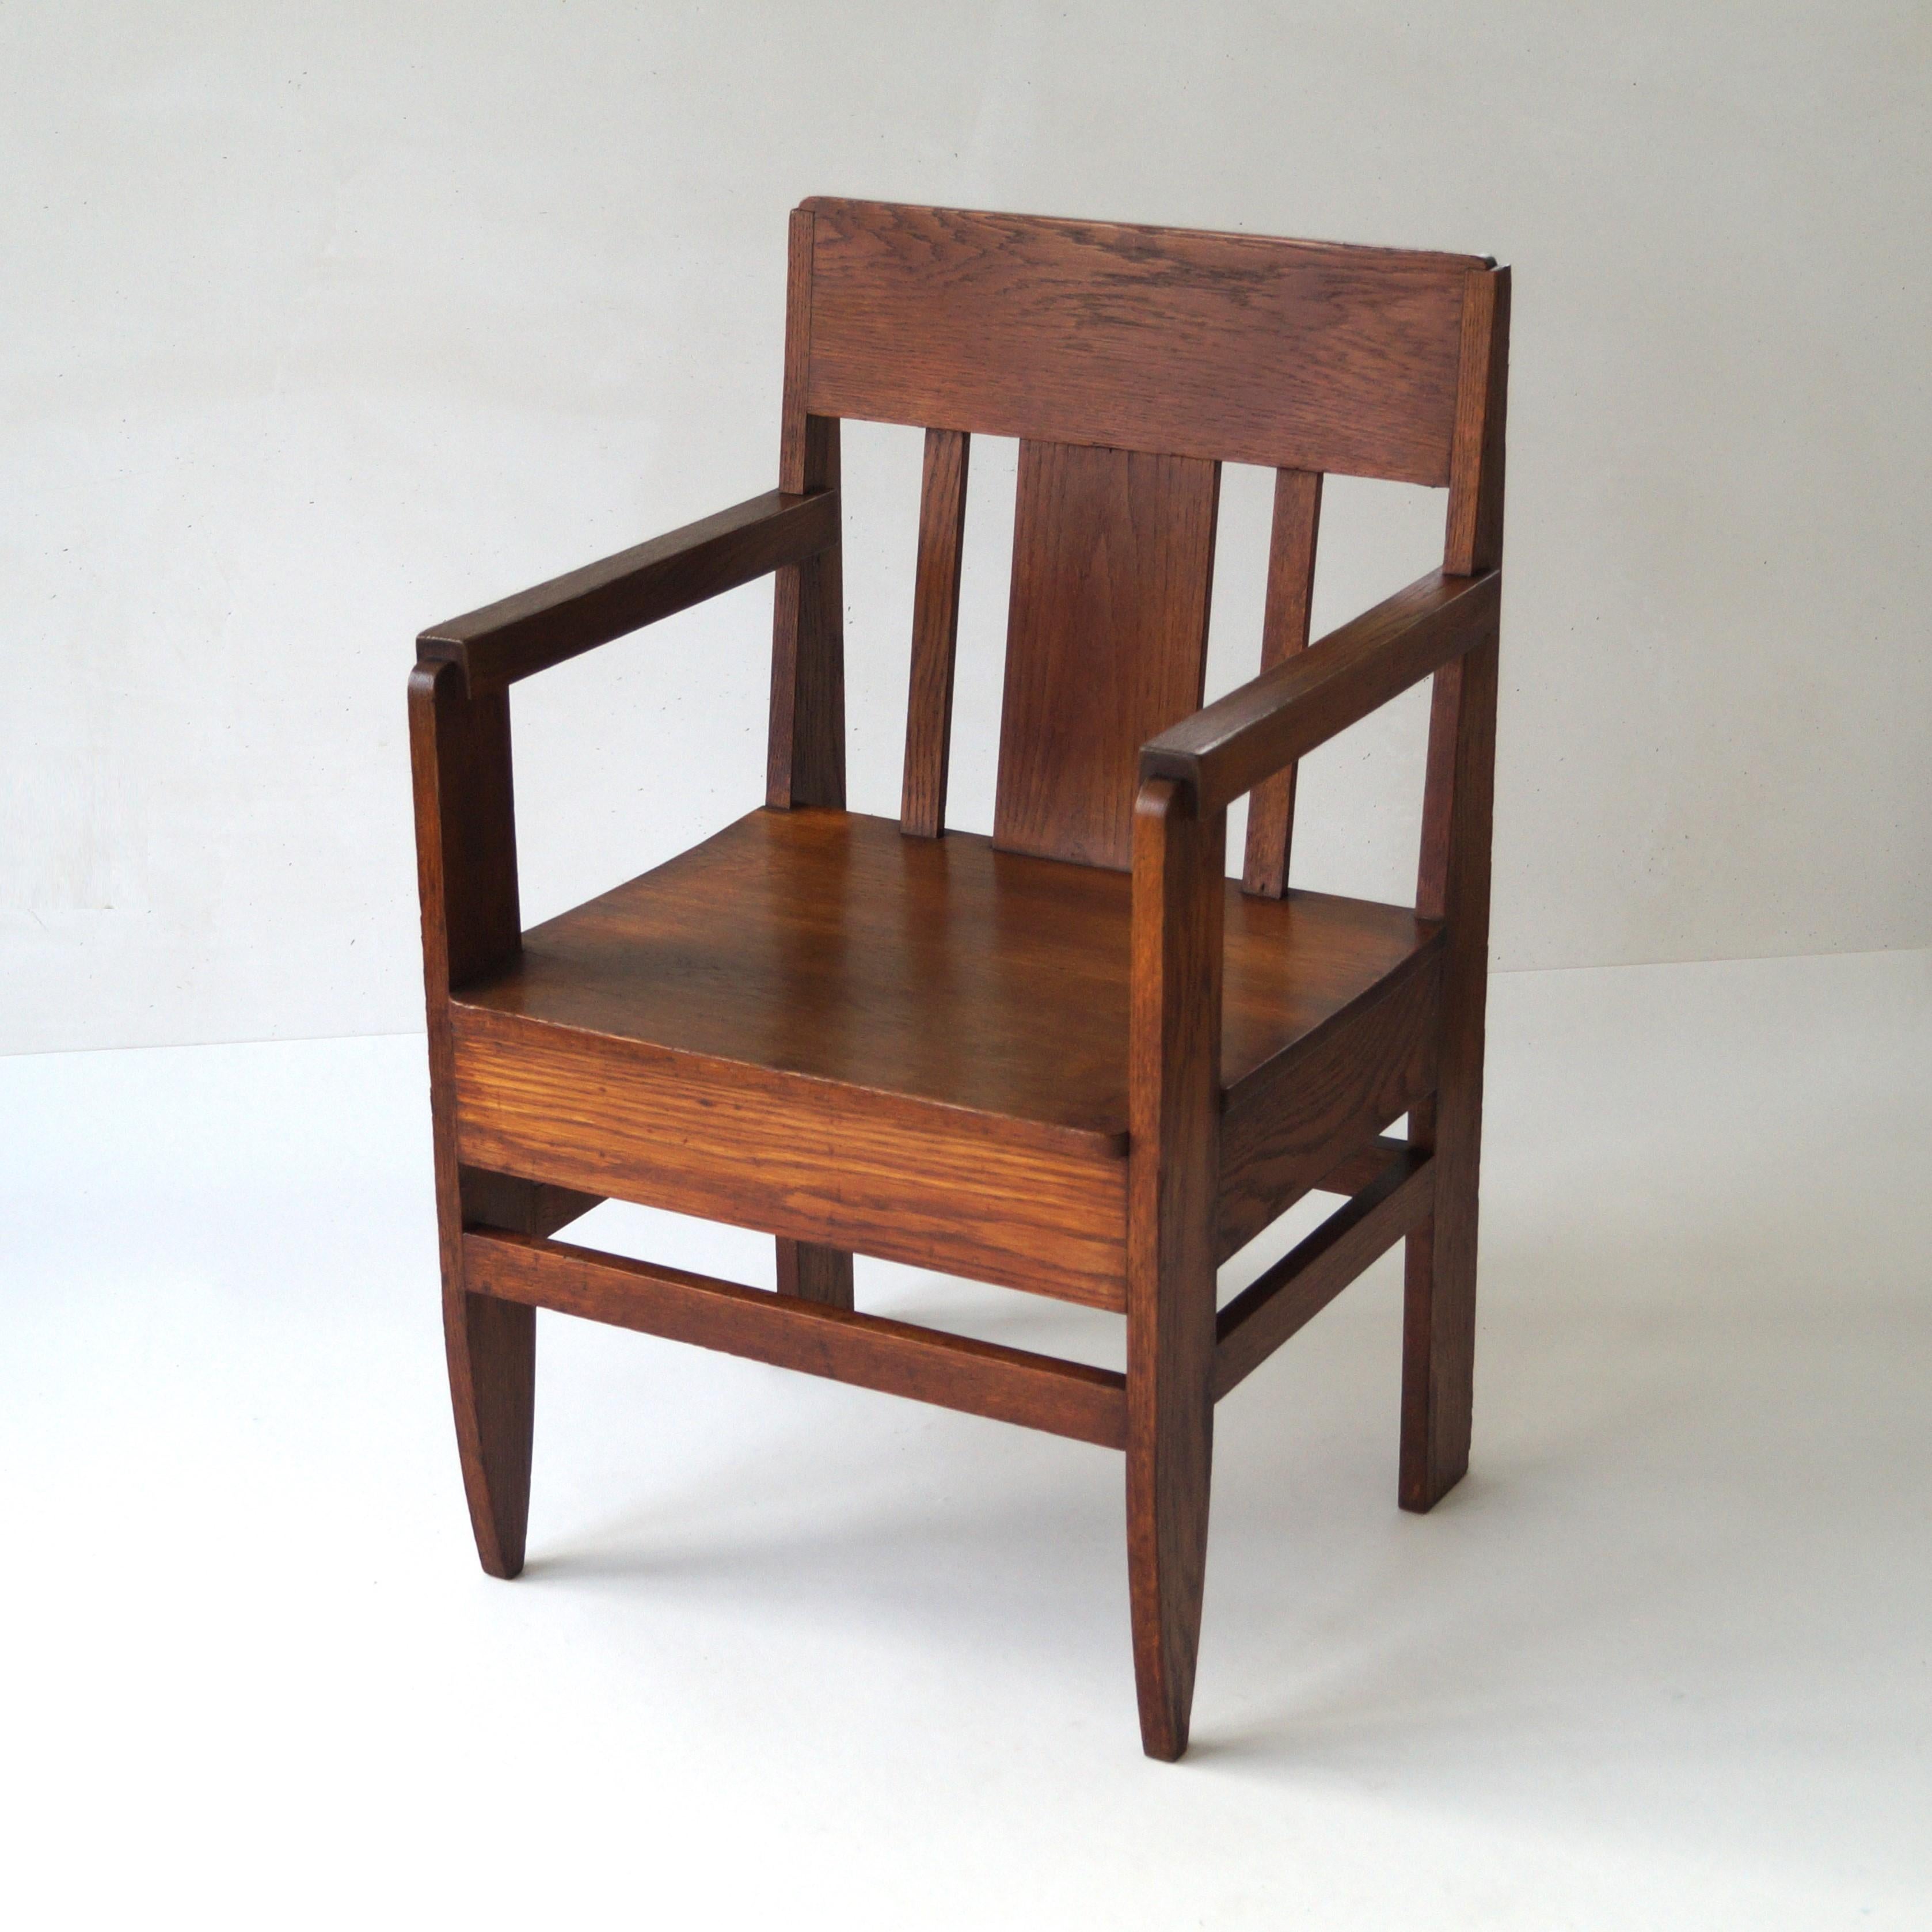 Ein antiker architektonischer holländischer Sessel aus massivem Eichenholz und einem außergewöhnlichen Design. Der Stuhl hat ein robustes Aussehen und ein hohes Gewicht. Dennoch hat er eine bescheidene Größe und Höhe und eignet sich sehr gut als